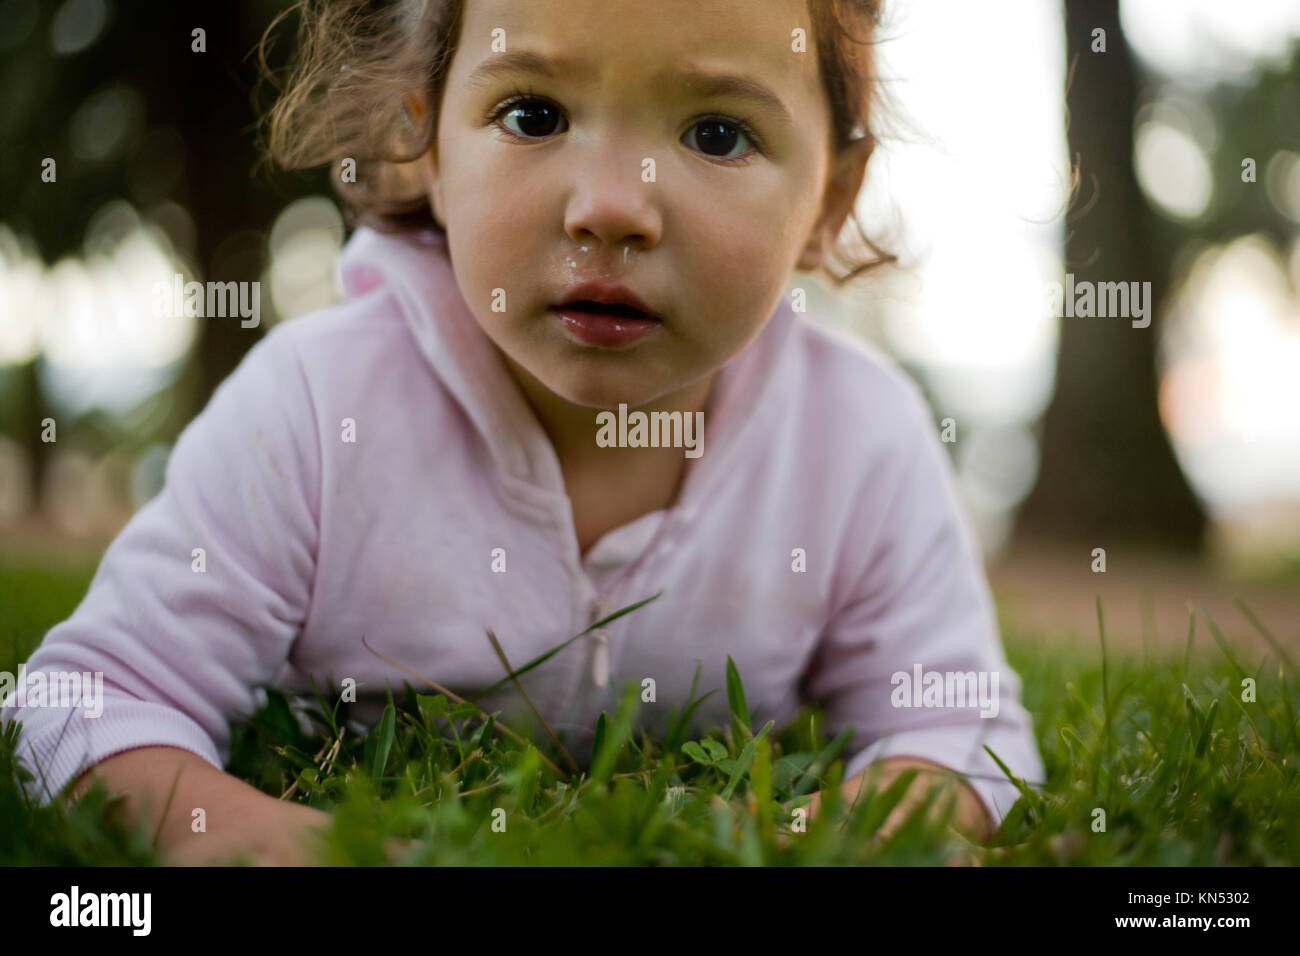 Cerca de una niña mirando a la cámara con la nariz llena de moco. Foto de stock